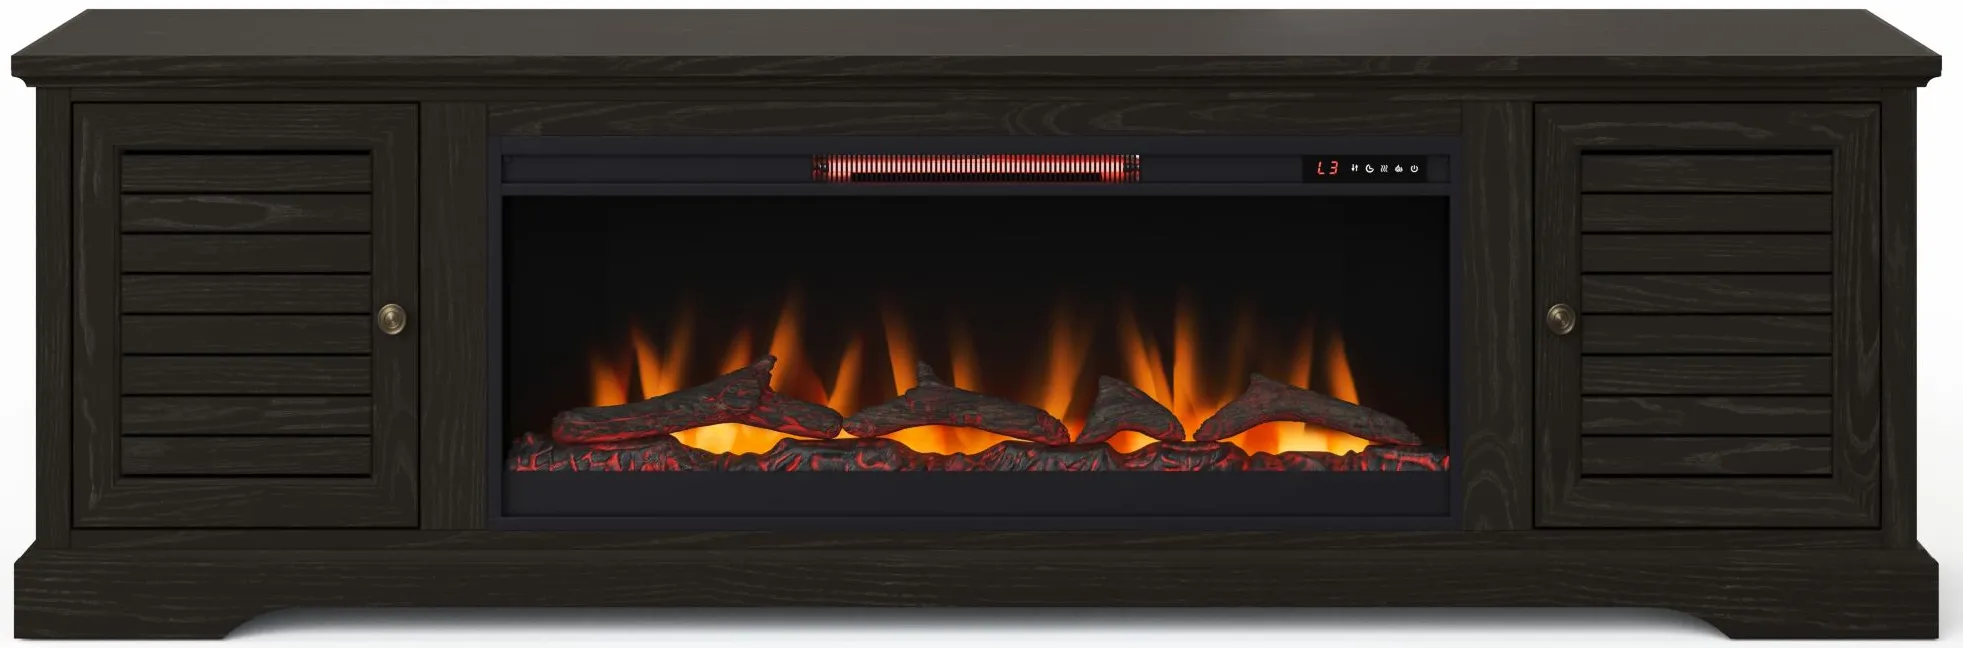 Topanga Super Fireplace Console in Clove by Legends Furniture